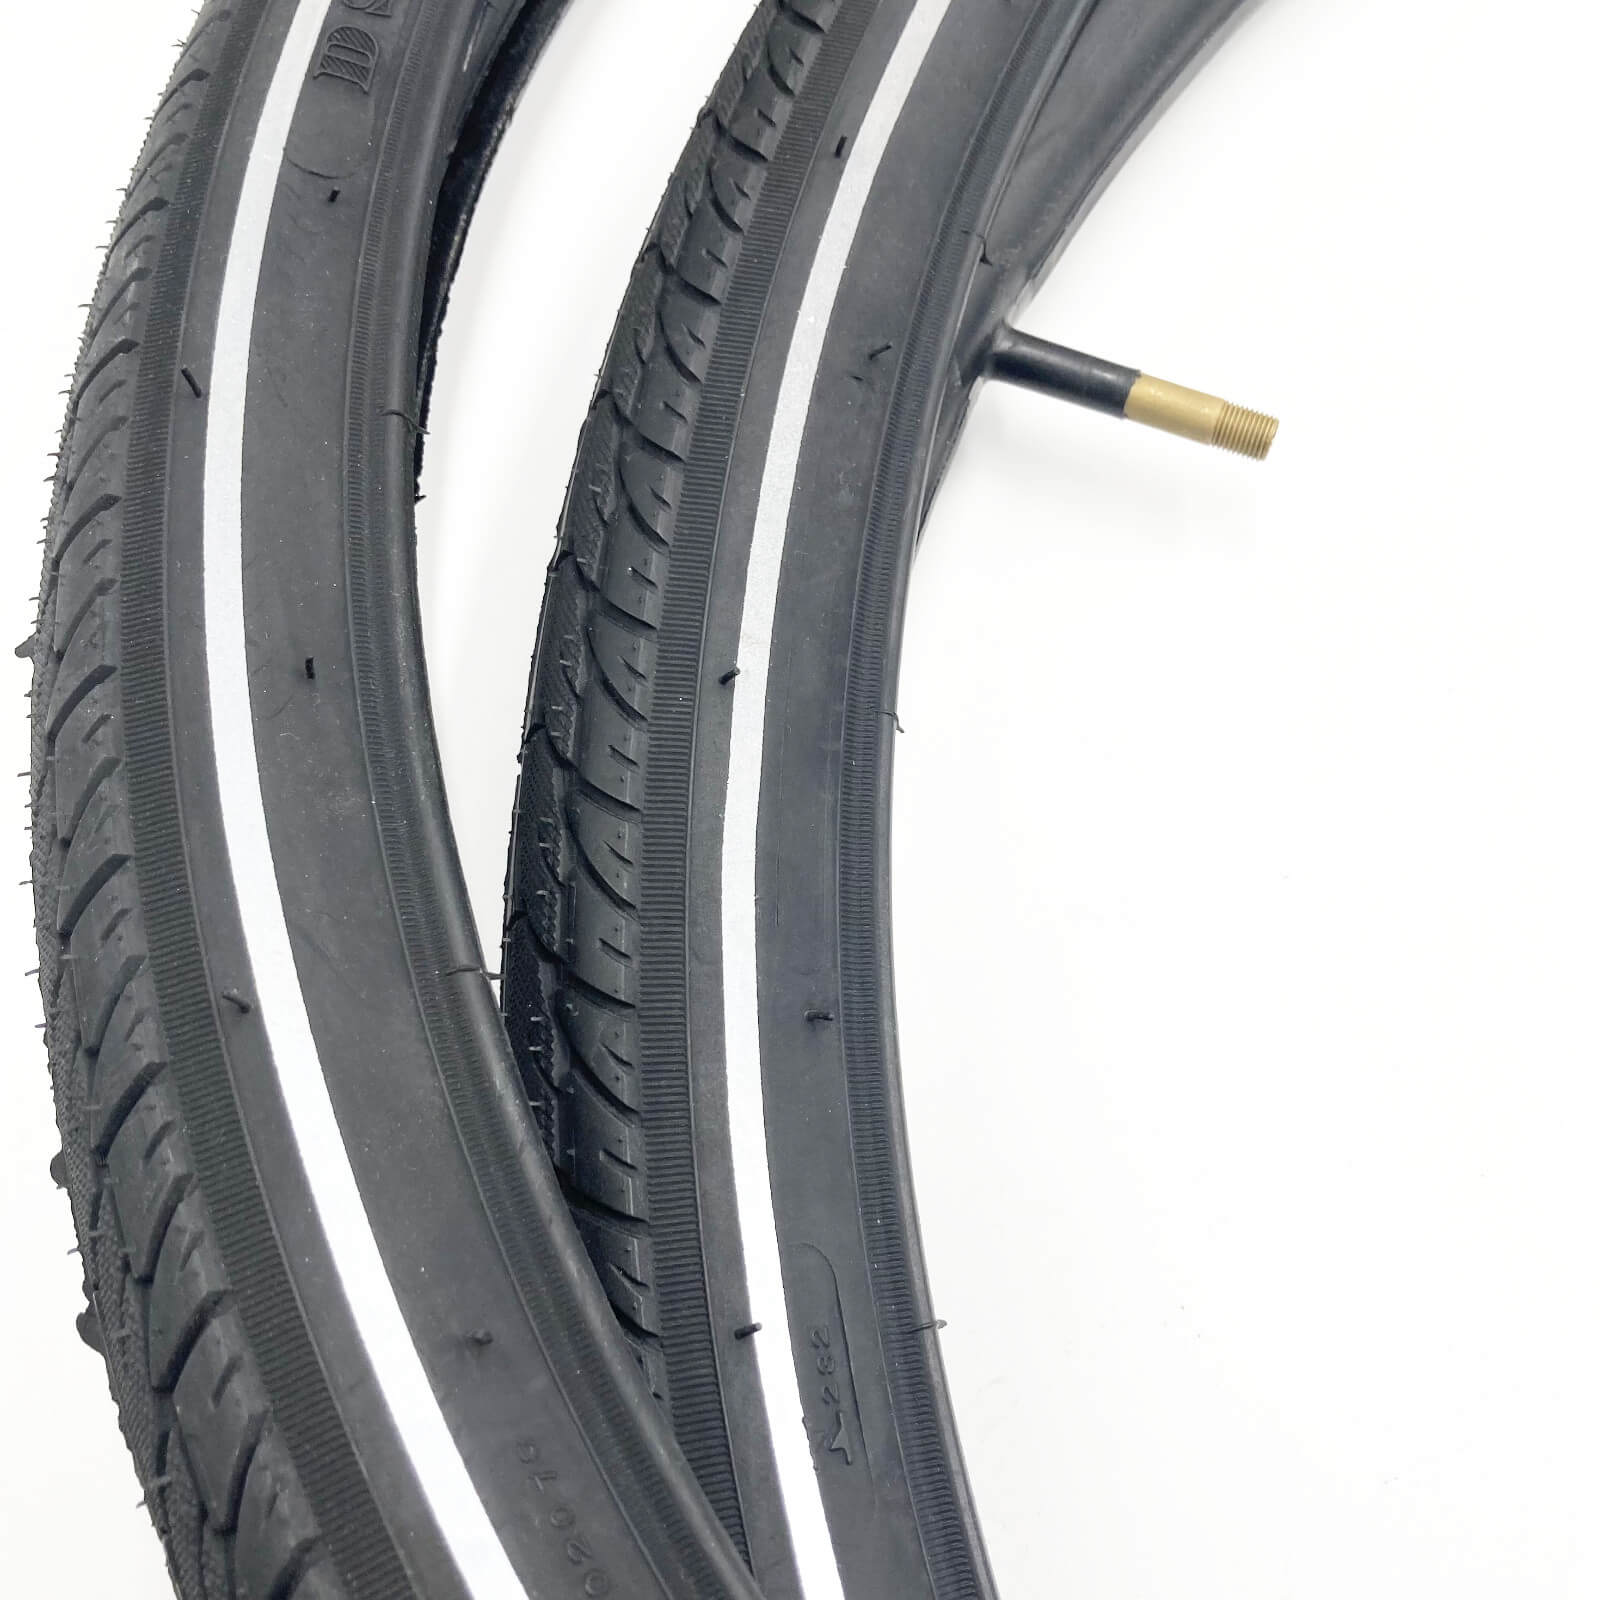 700c Bike Tyre DSI Slick 700x48c Reflective Sidewall Pair of Tyres Schrader Tubes Alternate 3